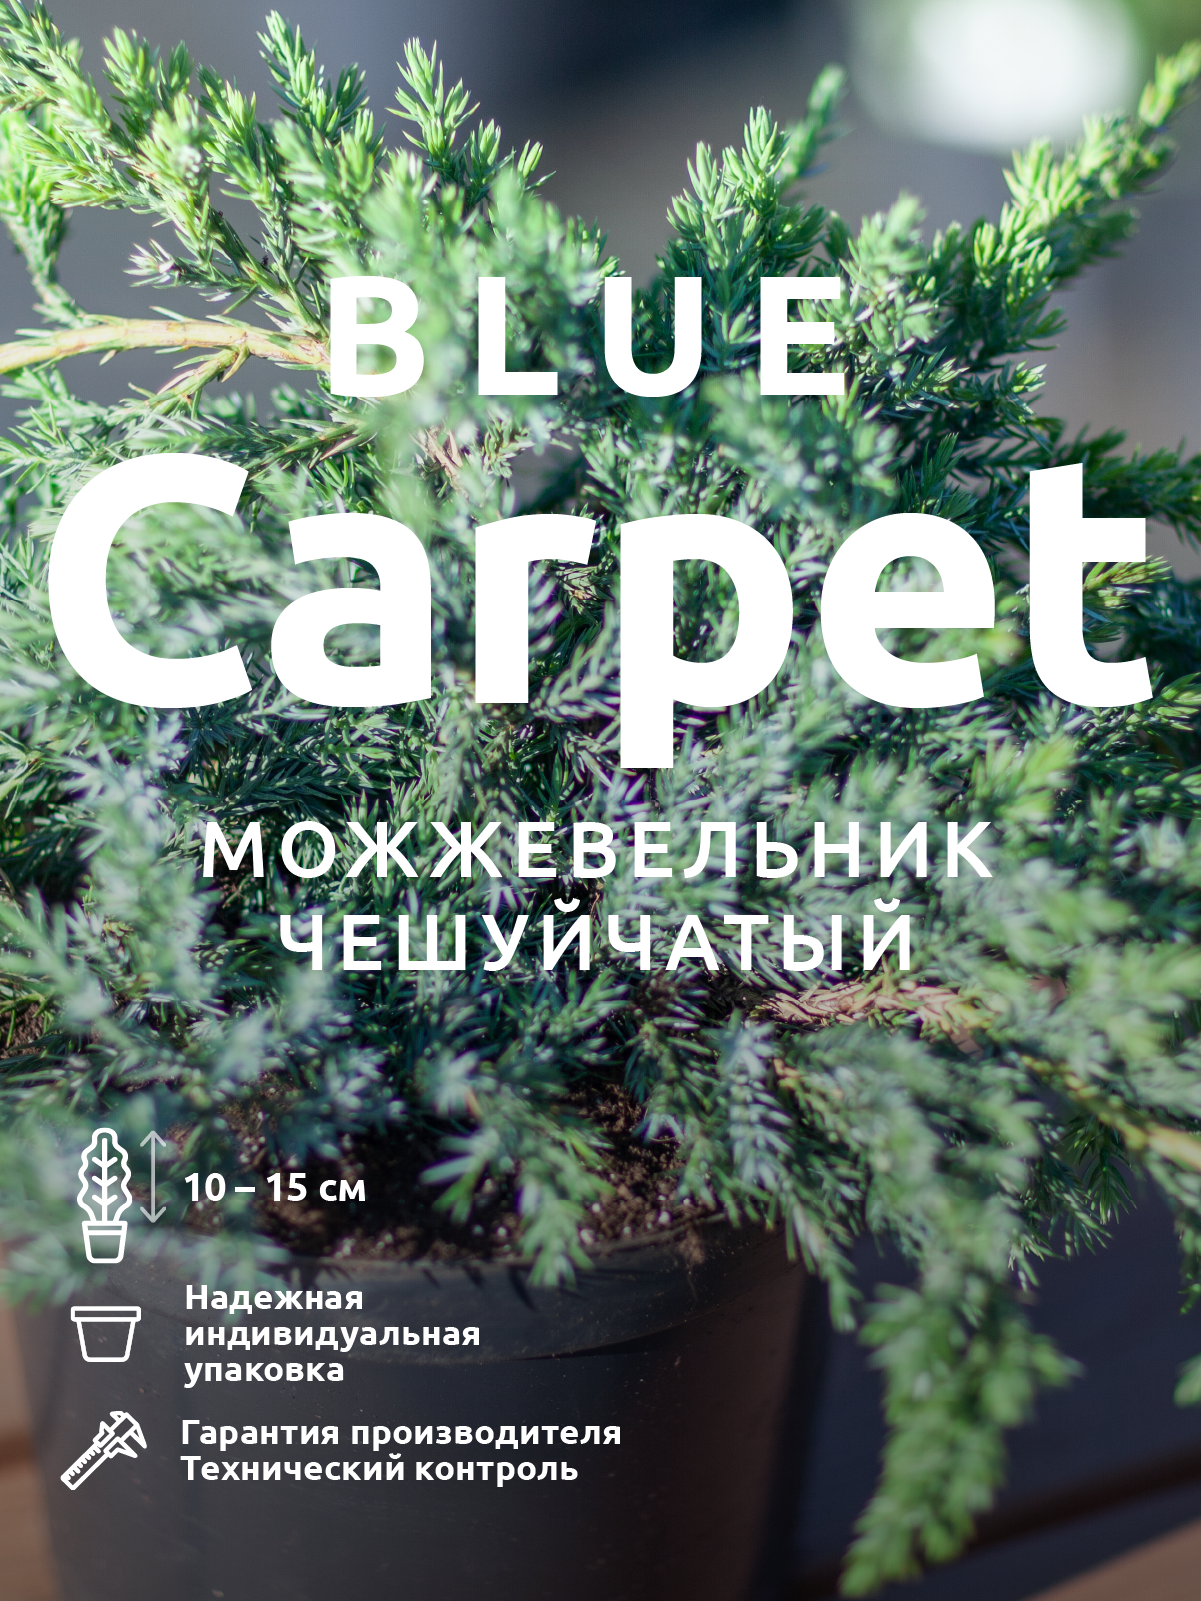 Можжевельник Блю Карпет в ландшафтном дизайне — купить по низкой цене на Яндекс Маркете